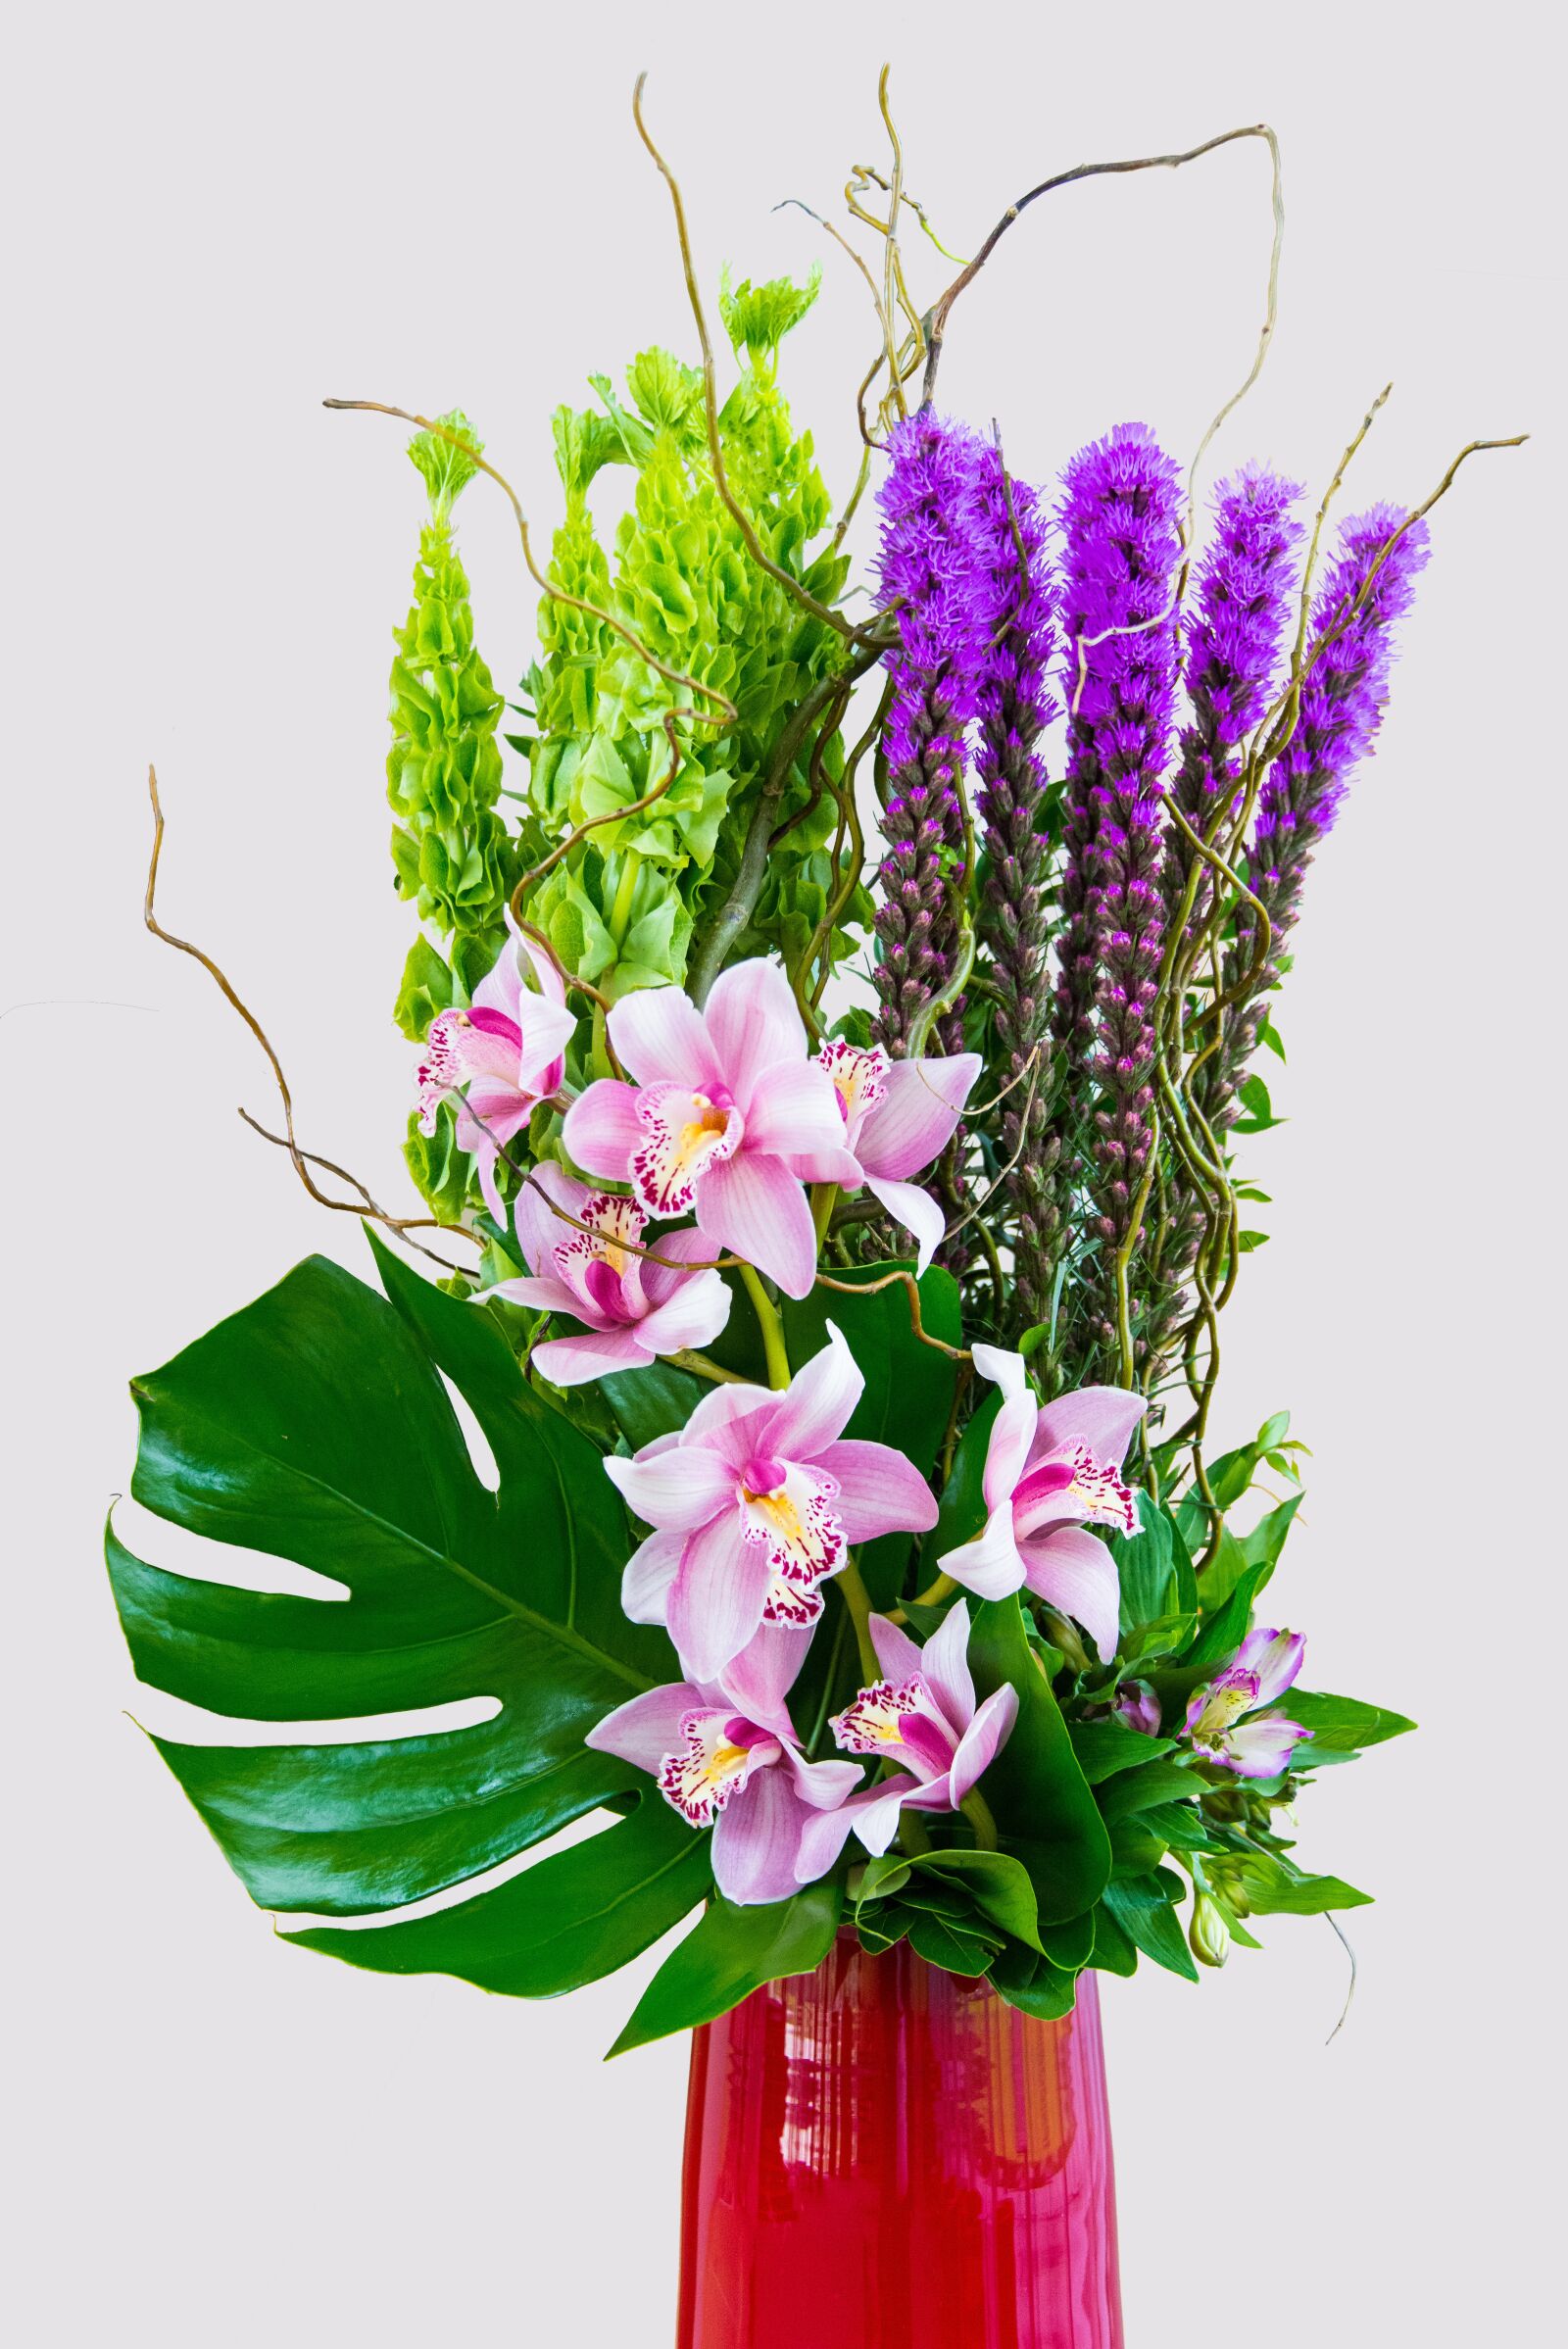 Nikon D800 sample photo. Flowers, vase, arrangement photography